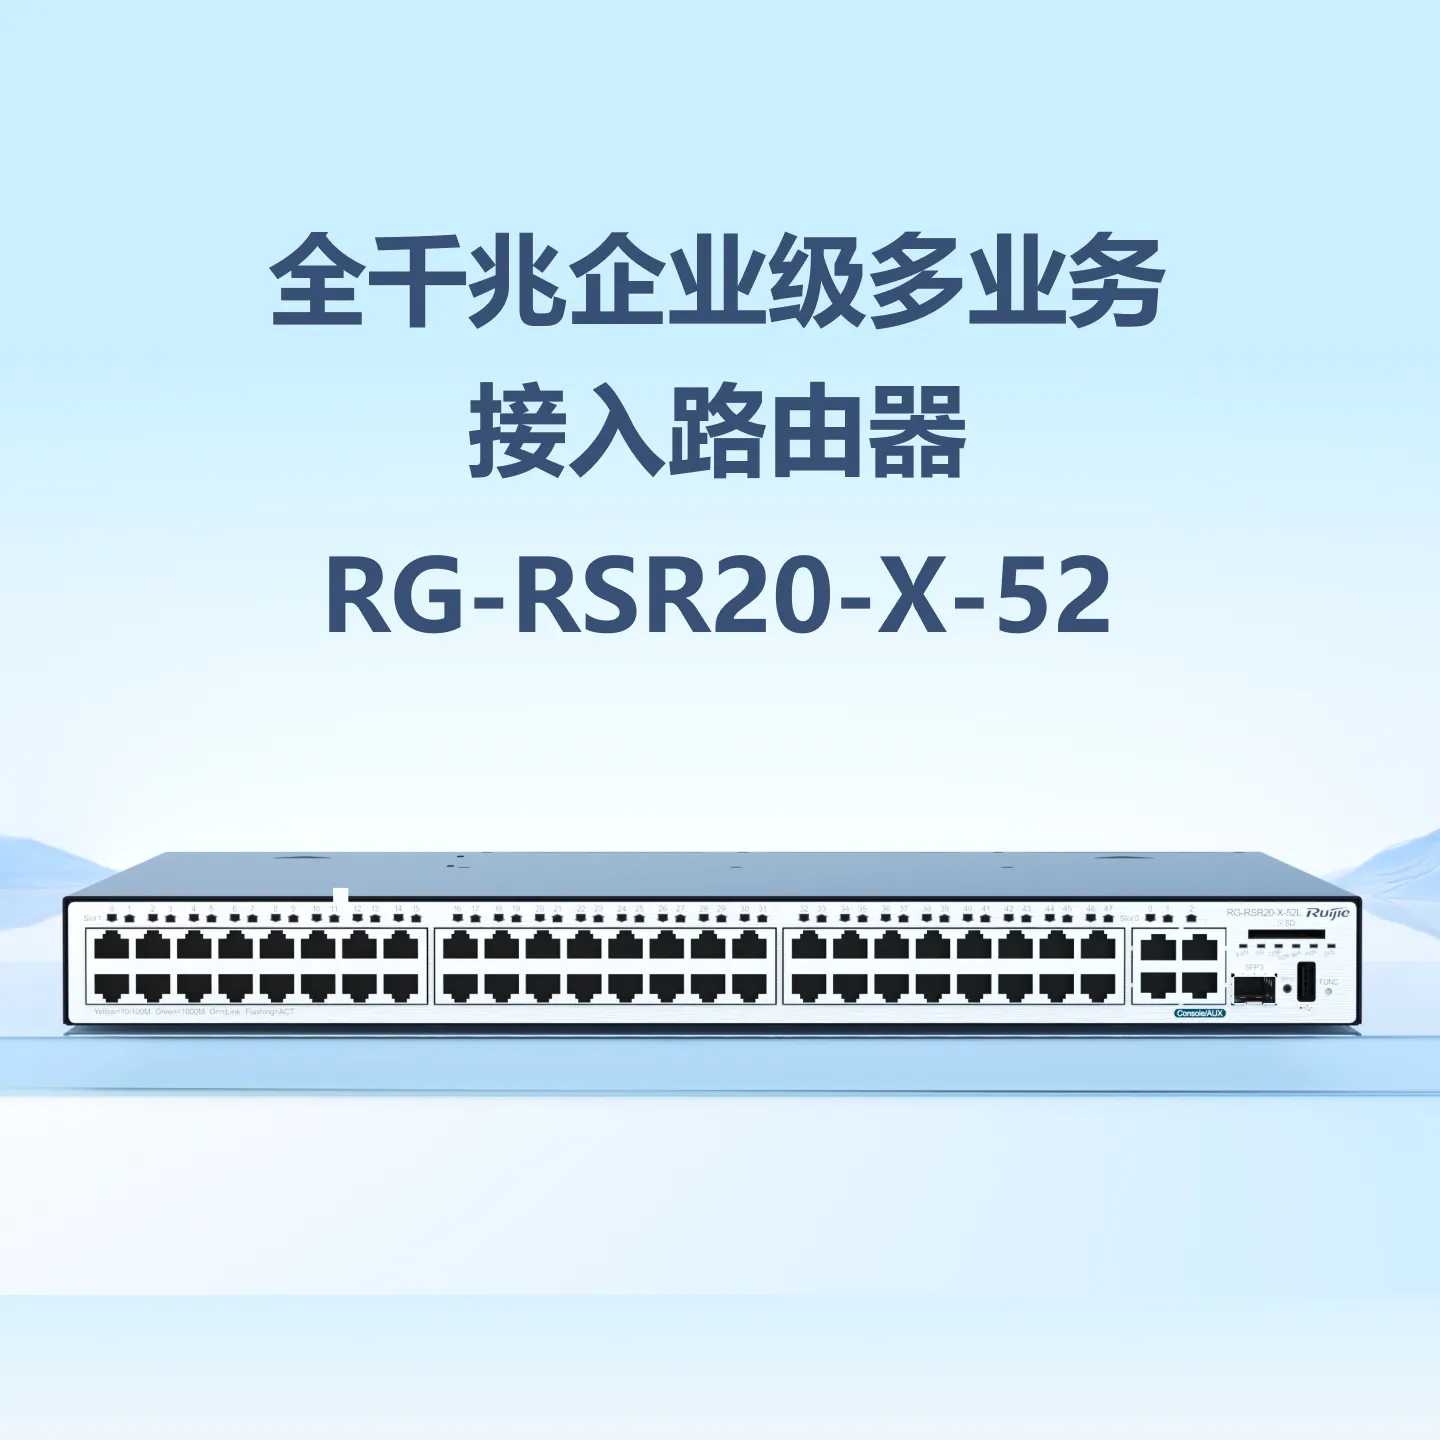 RG-RSR20-X-52